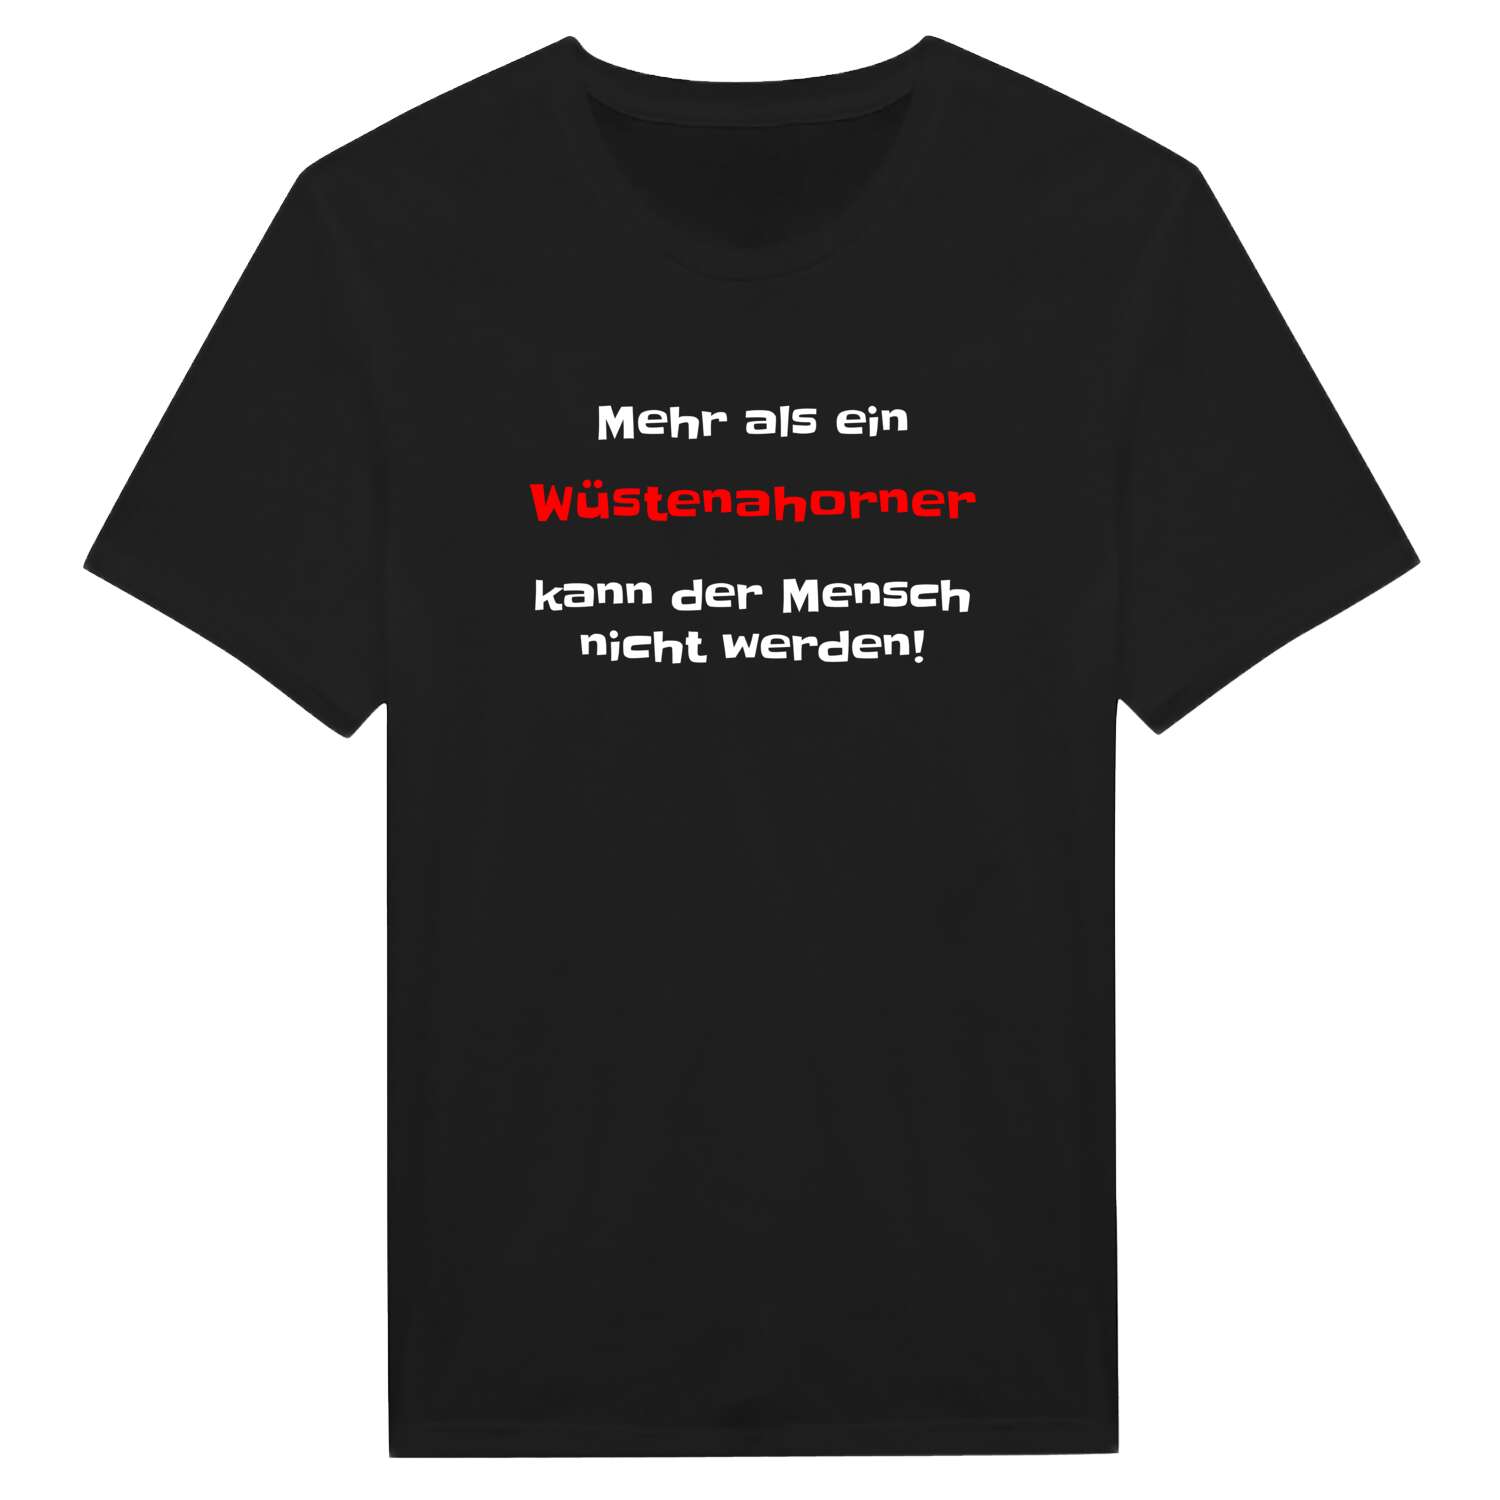 Wüstenahorn T-Shirt »Mehr als ein«